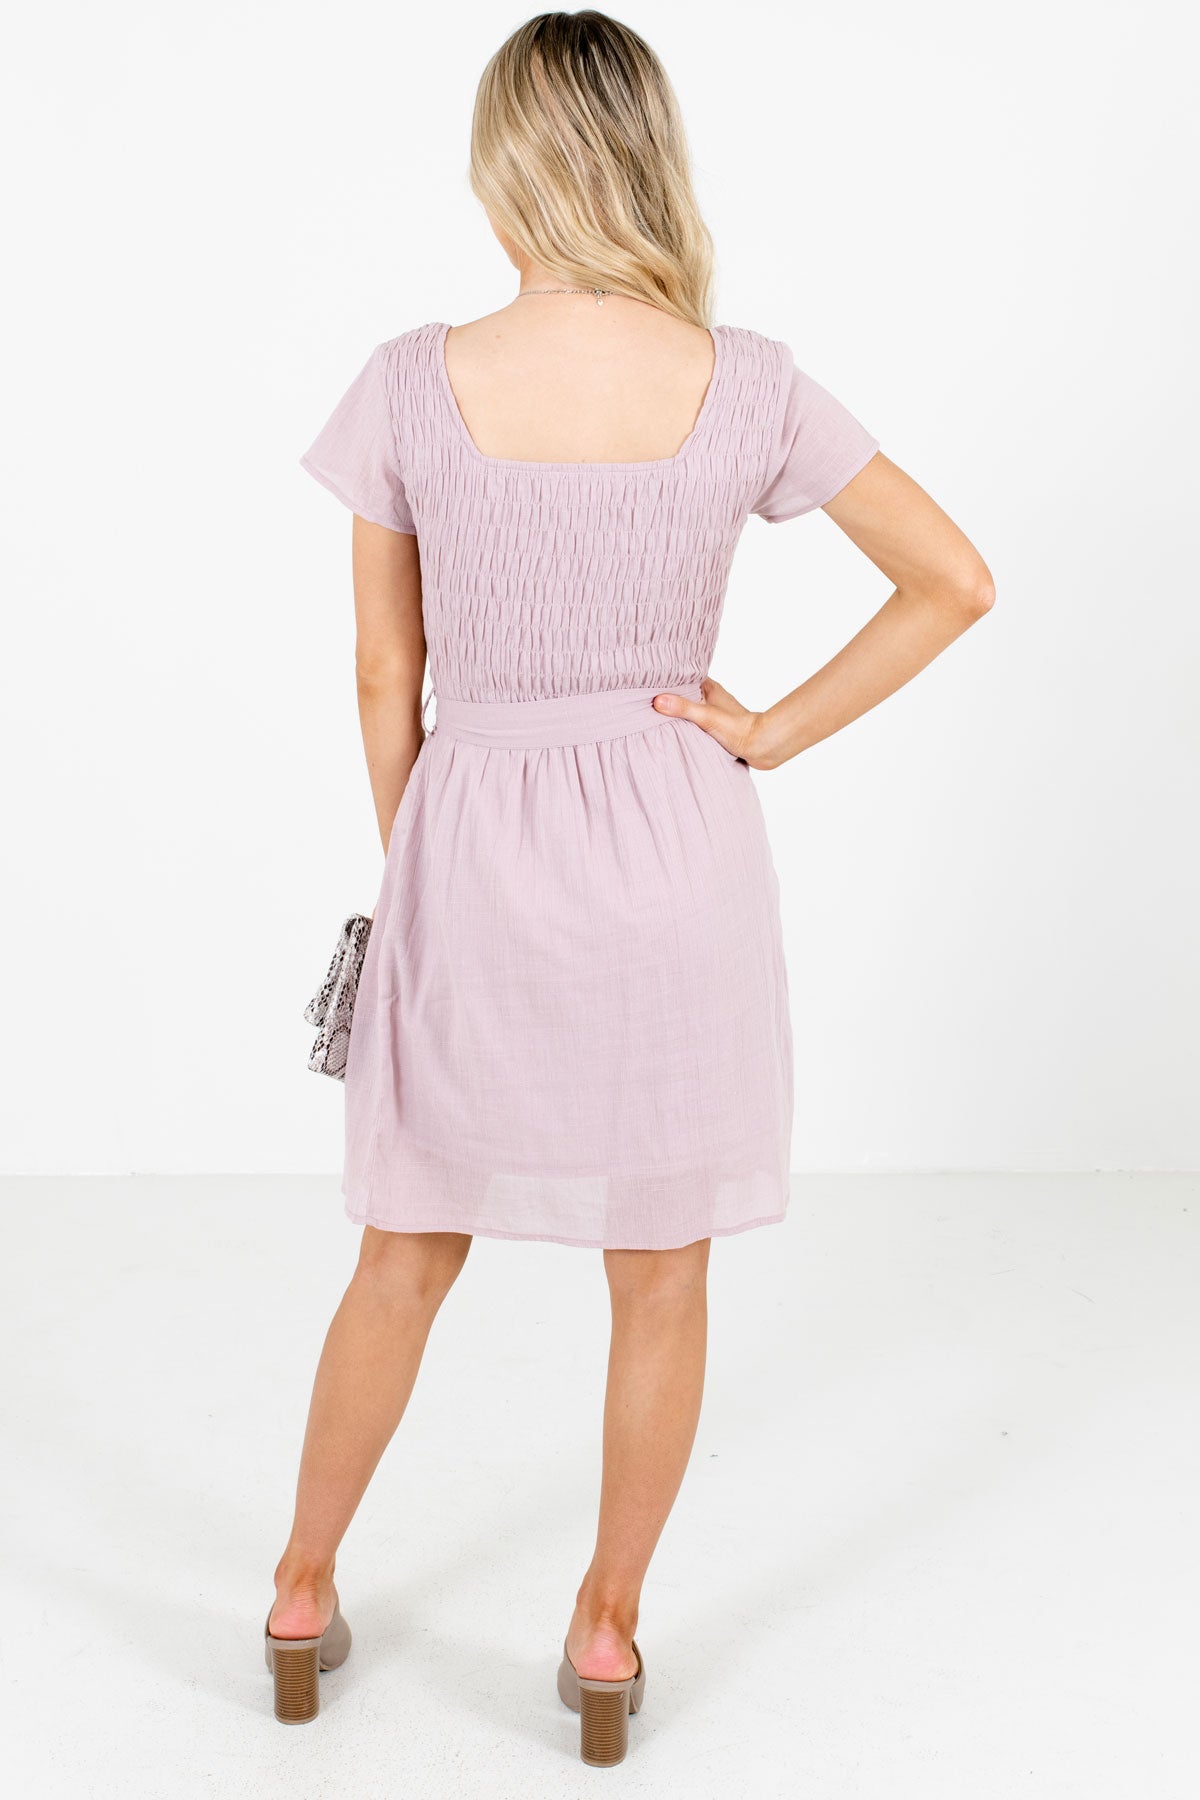 Women's Lavender Purple Waist Tie Detailed Boutique Mini Dress